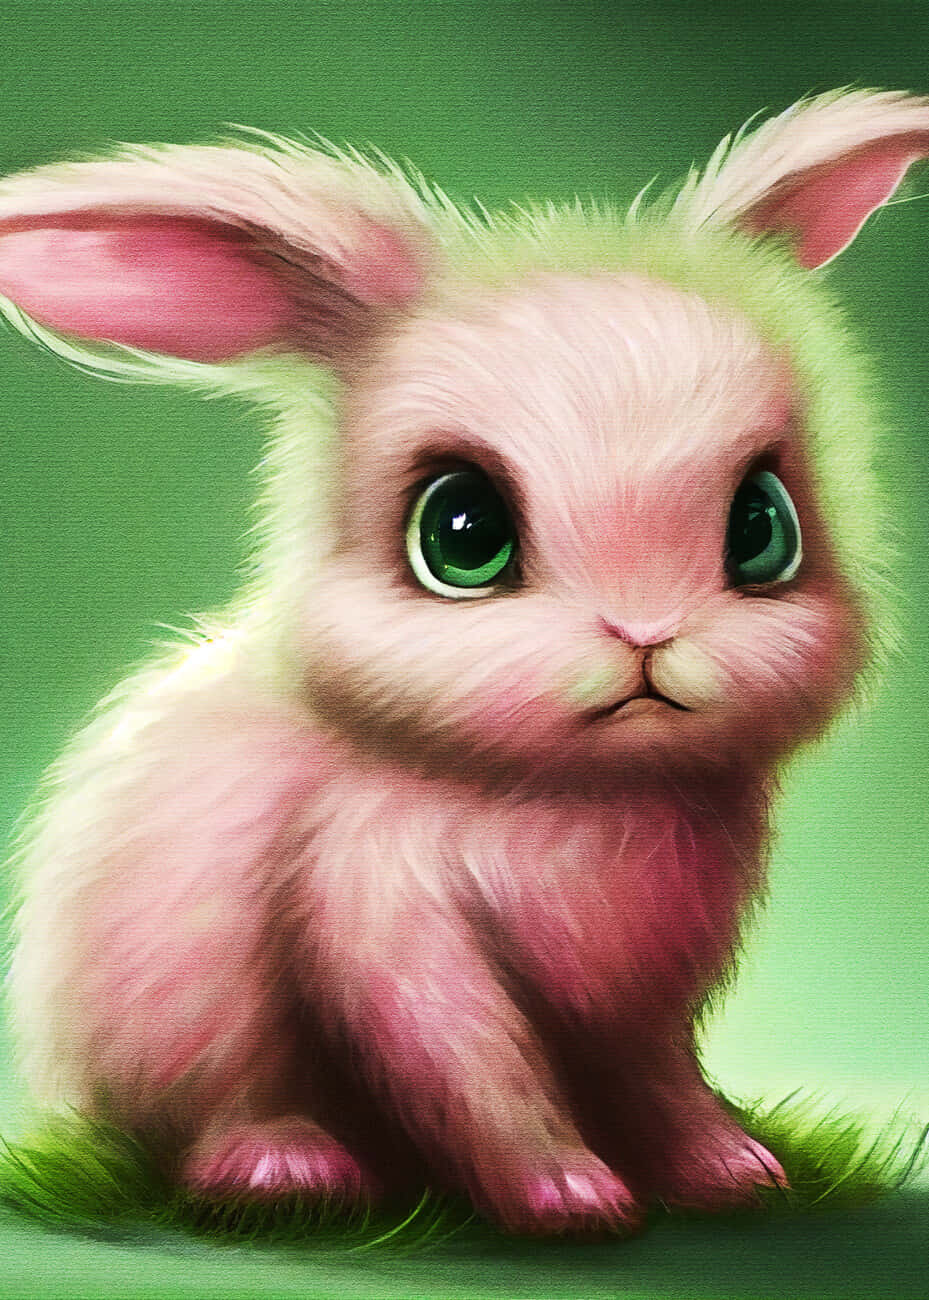 Søde unge kaninbilleder dekorerer din skærm